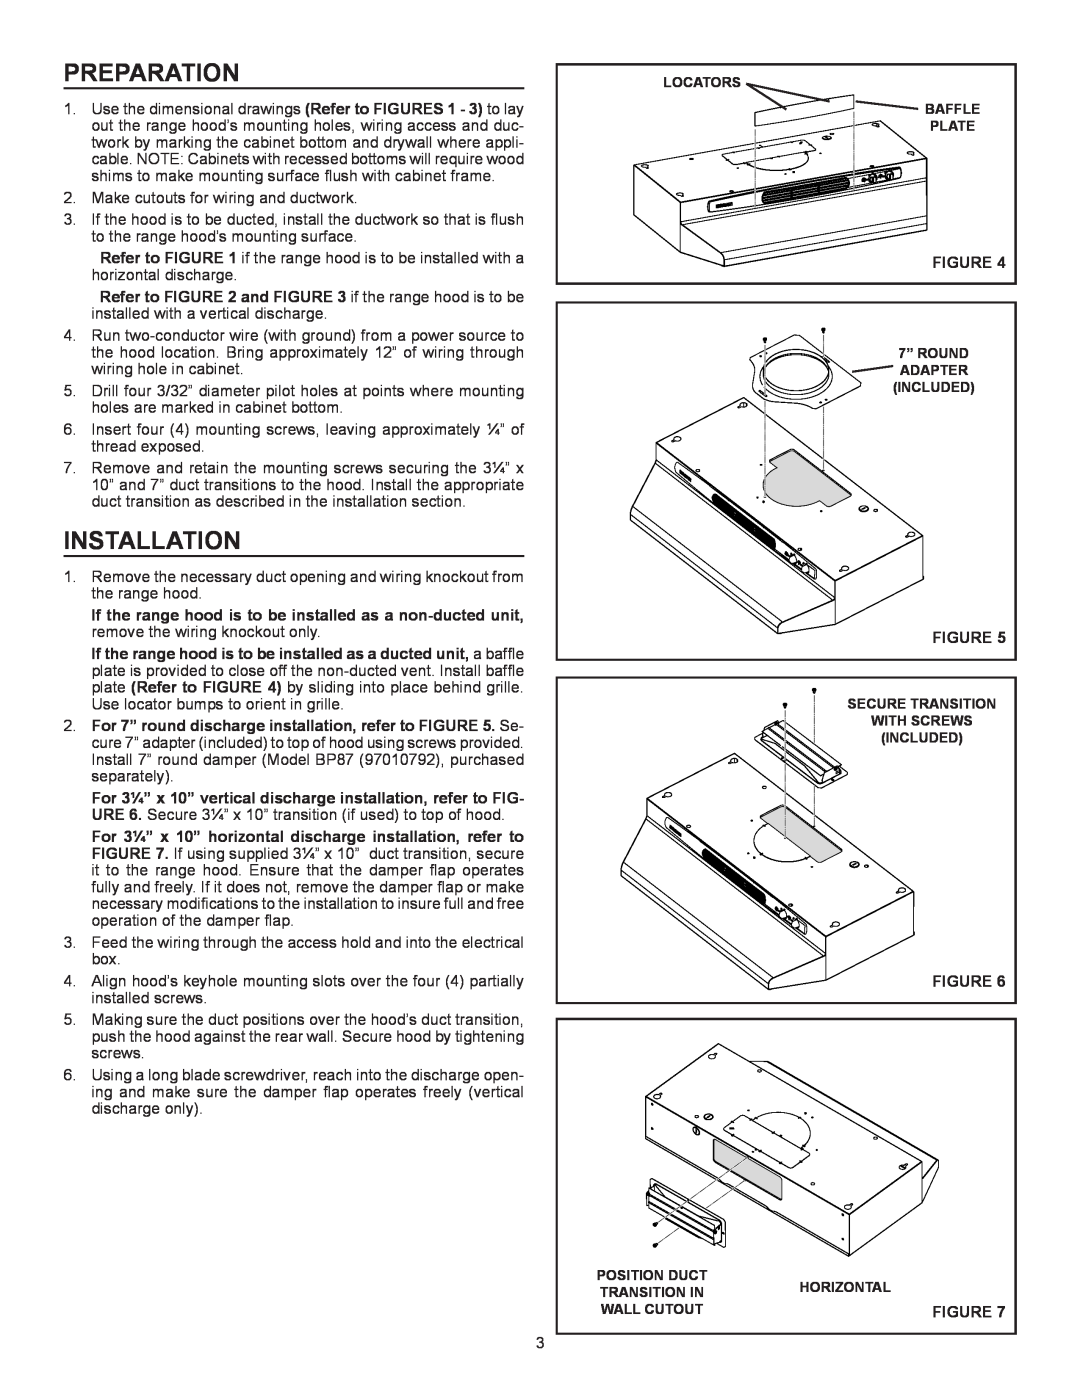 Broan Ql100 Series installation instructions Preparation, Installation 